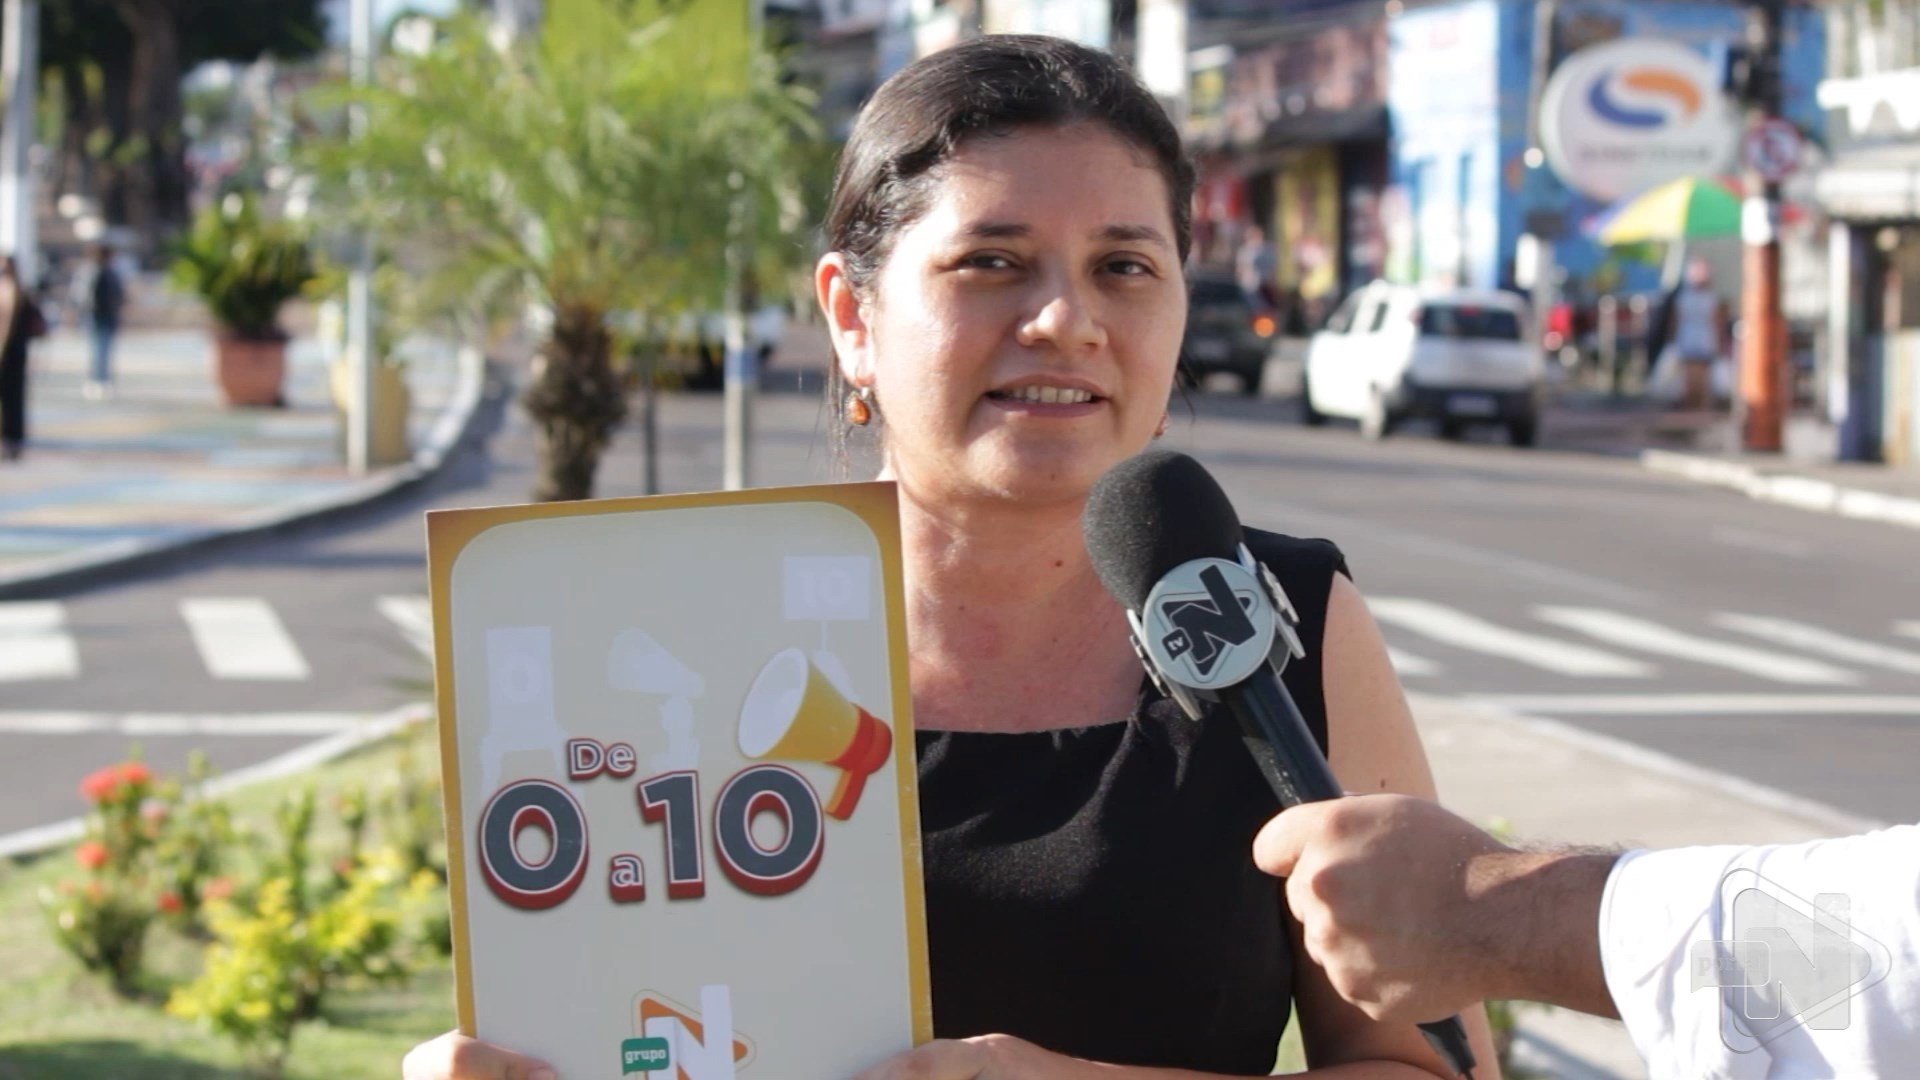 População fala e dá nota para praças e calçadas de Manaus. Reprodução/ TV Norte Amazonas.